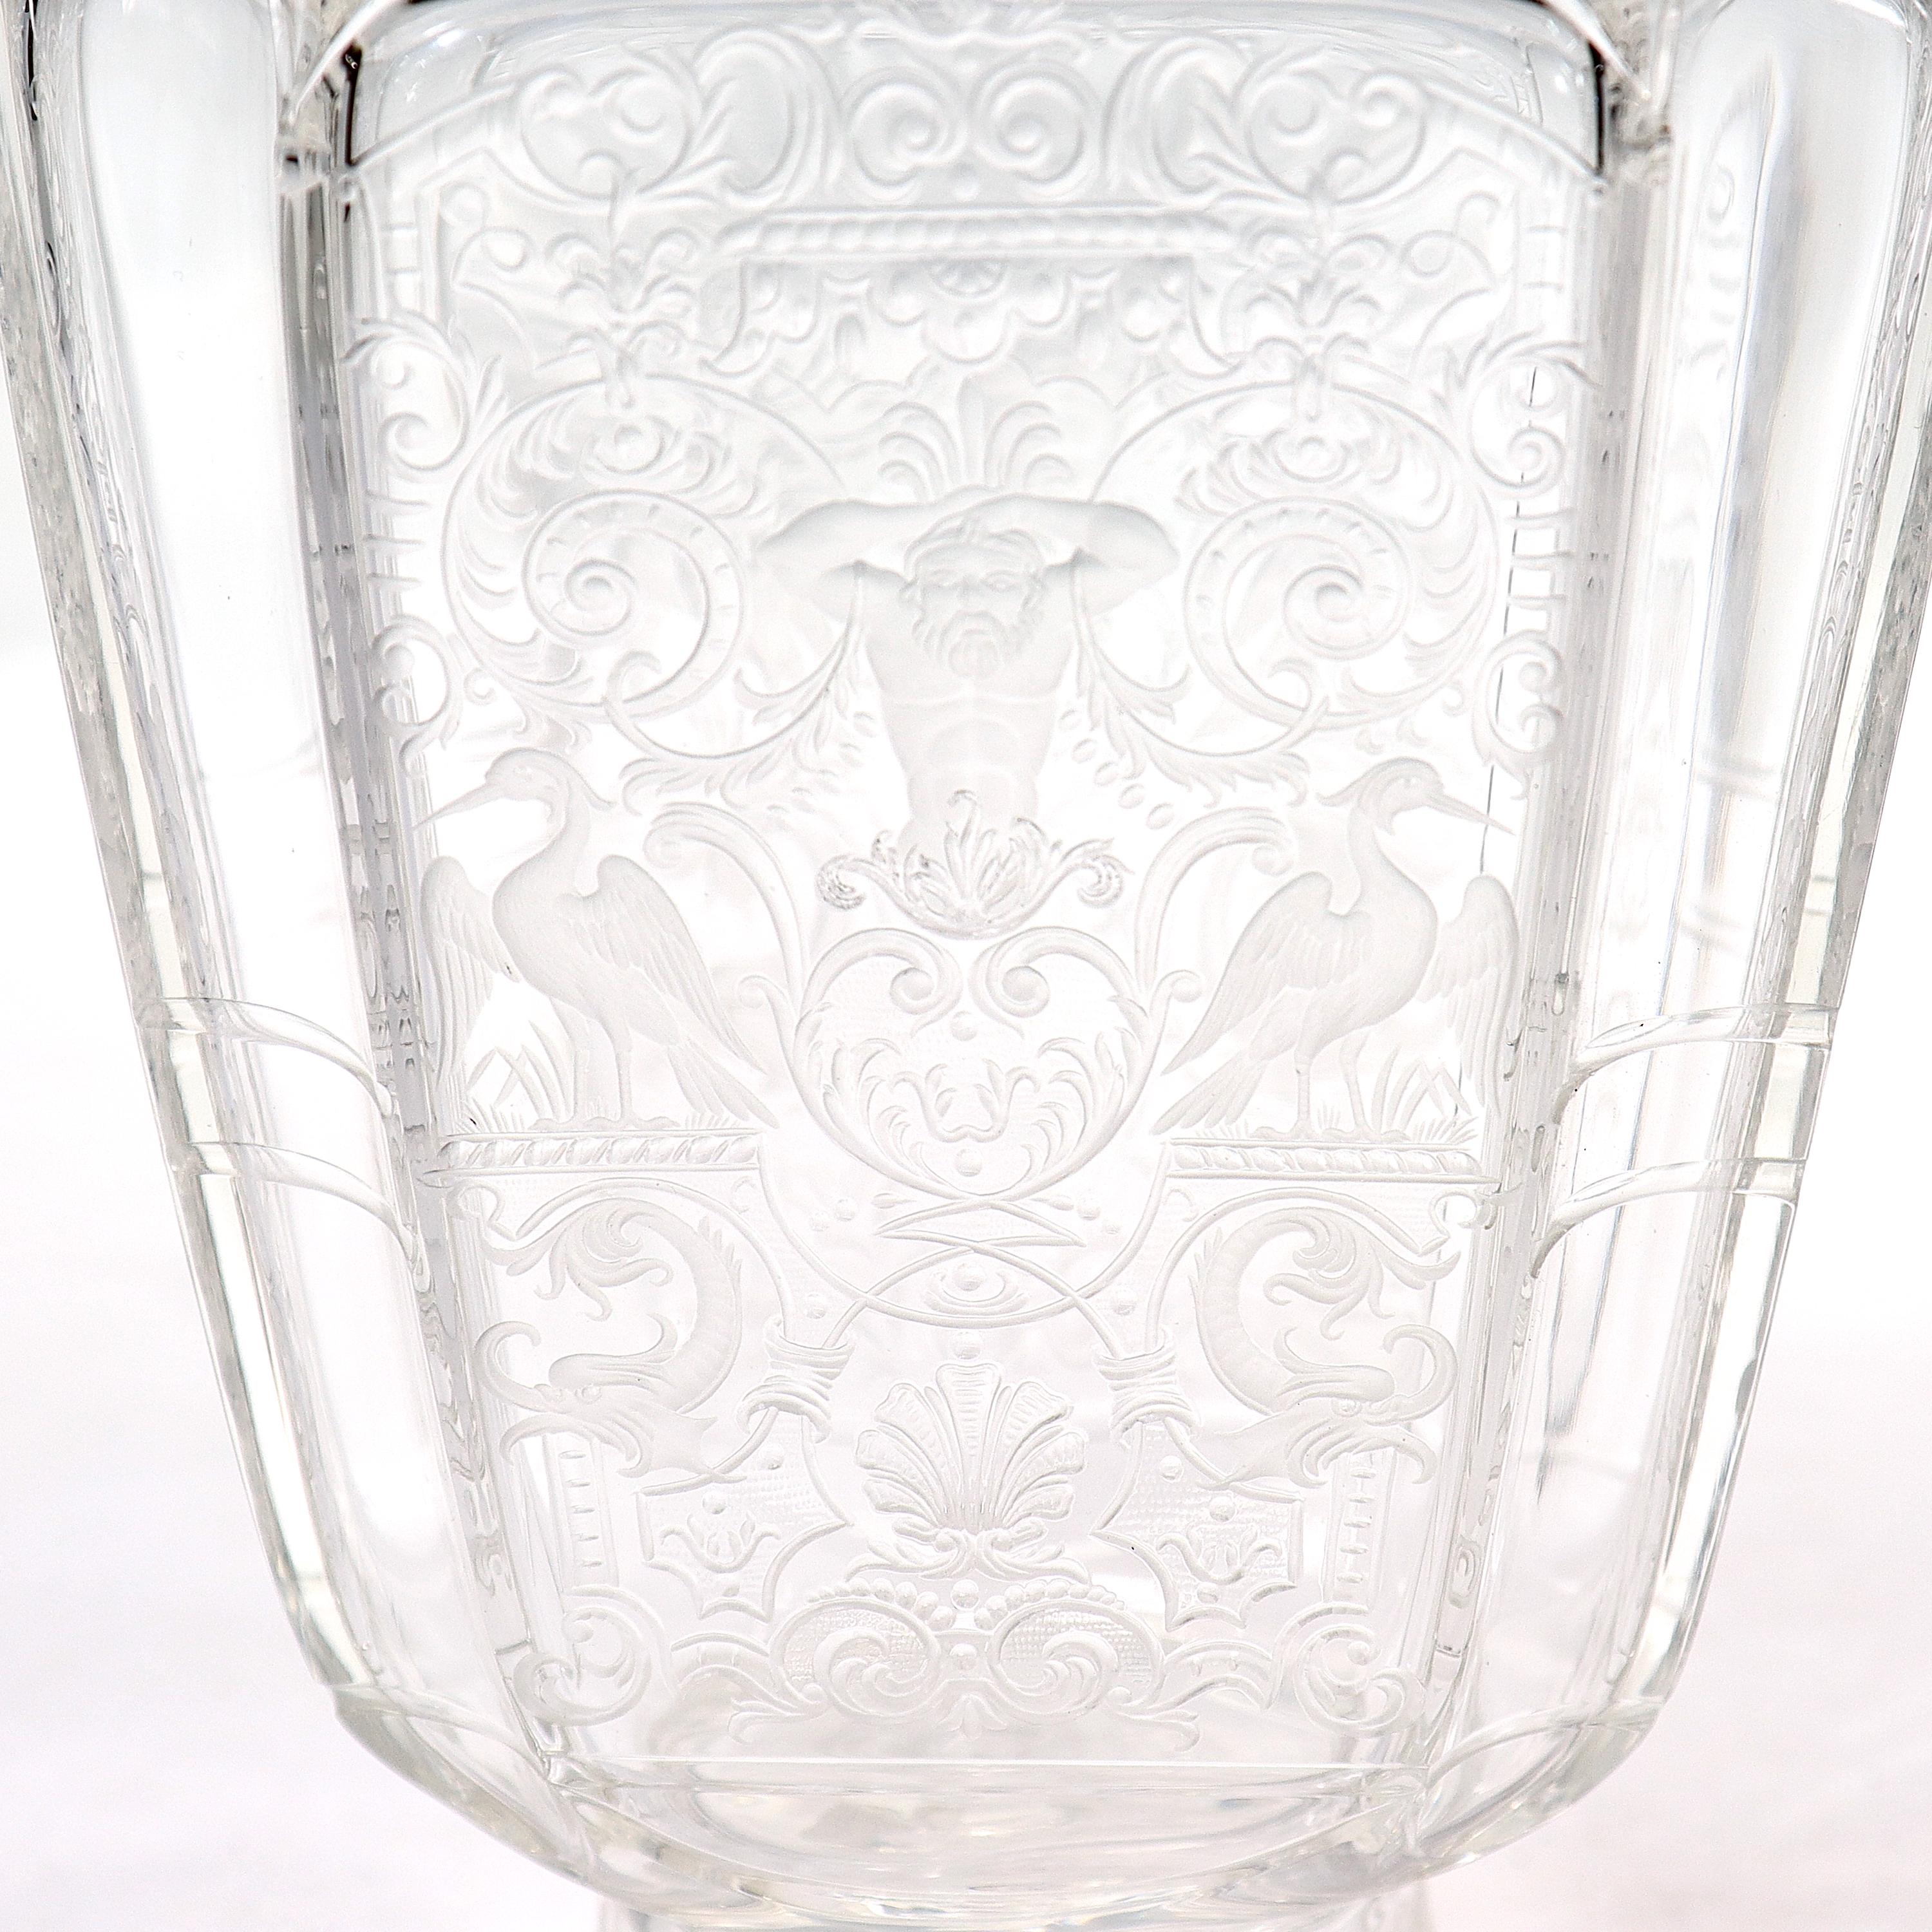 Renaissance Revival Antique Lobmeyr Austrian 'Rock Crystal' Etched & Engraved Cut Glass Decanter For Sale